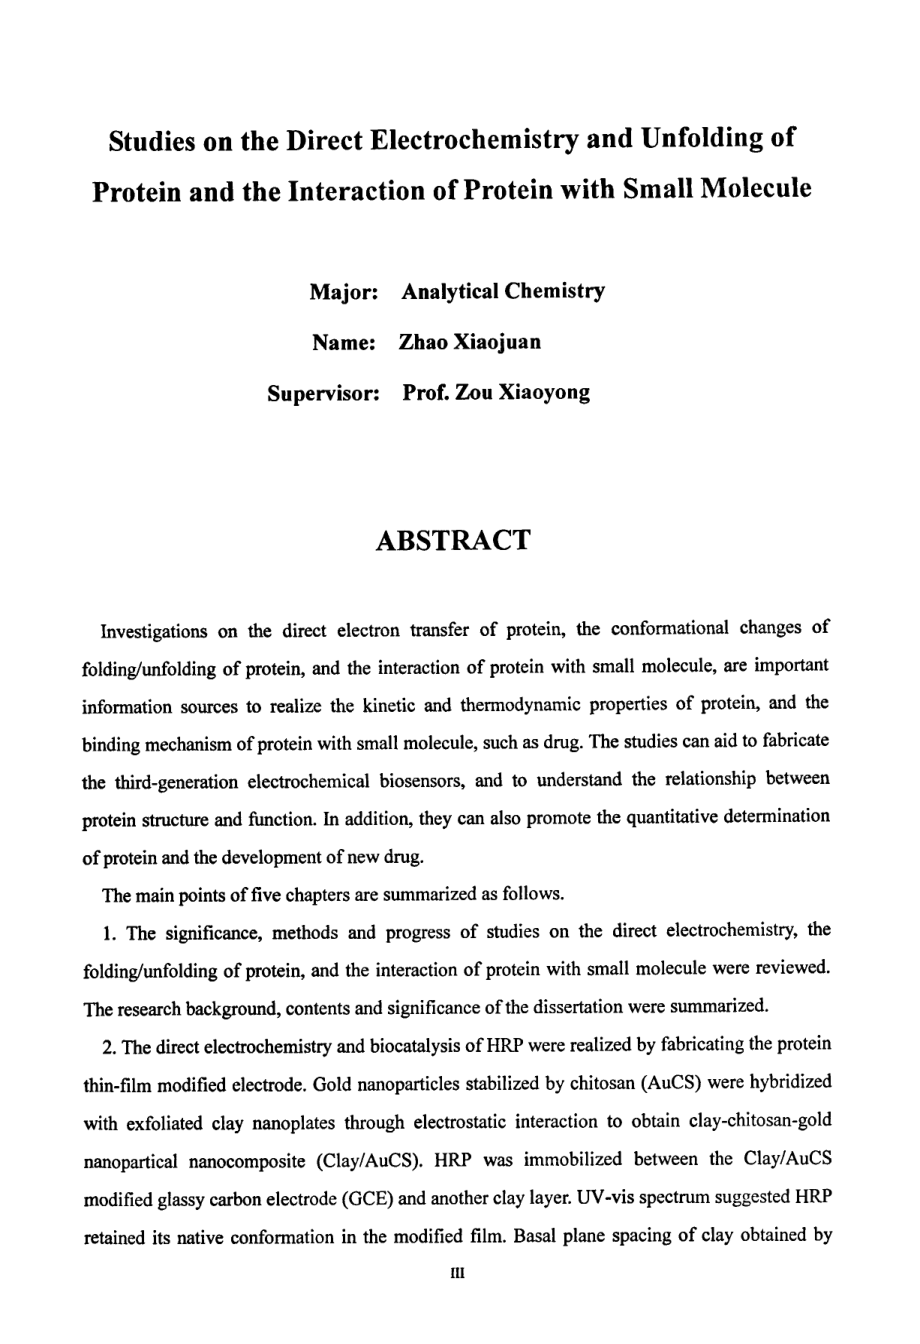 蛋白质直接电化学和去折叠及与小分子相互作用的研究_第4页